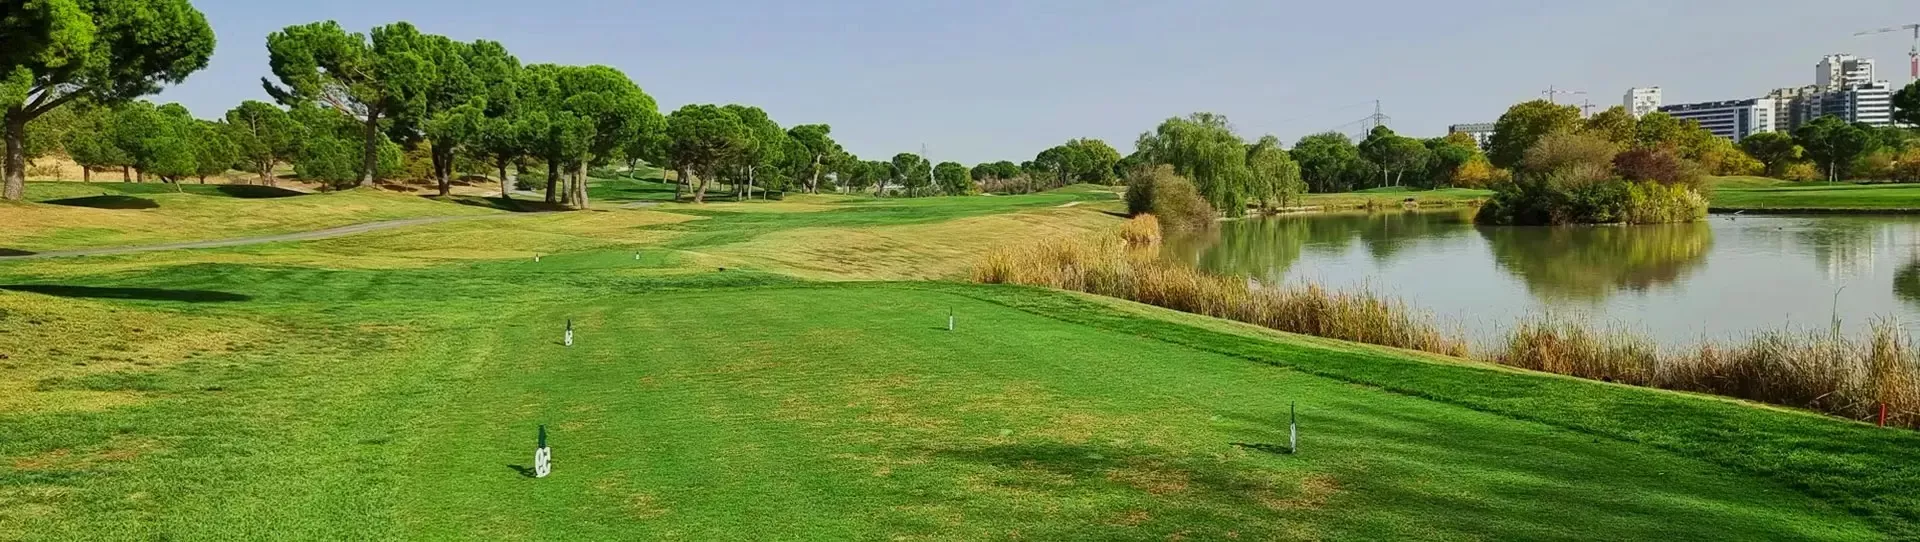 Spain golf courses - La Moraleja Golf Course II - Photo 3